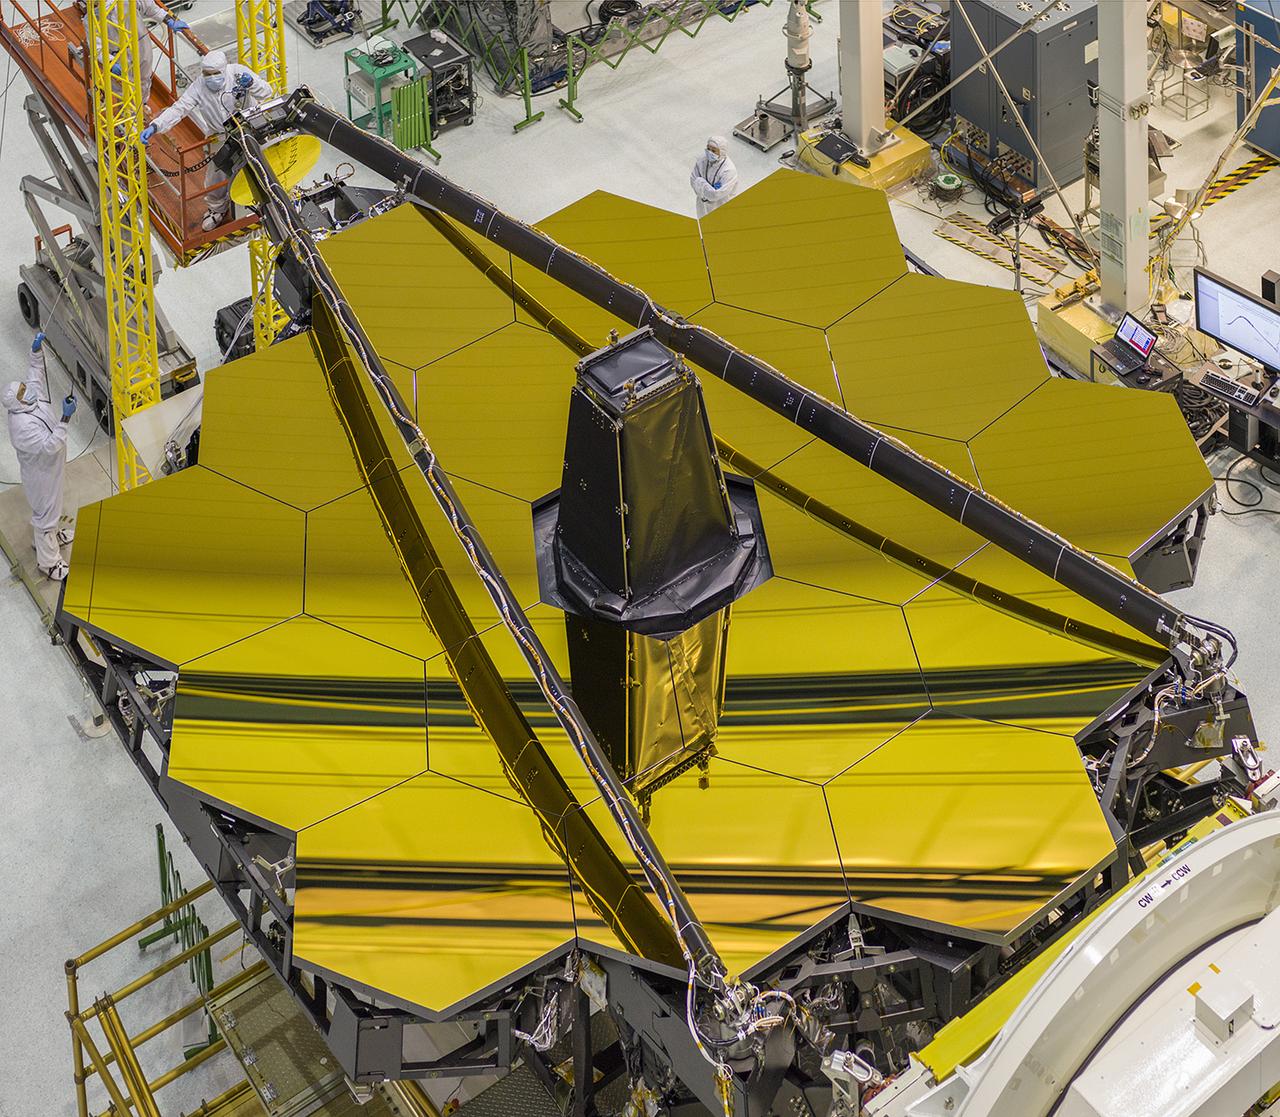 The James Webb Space Telescope primary mirror